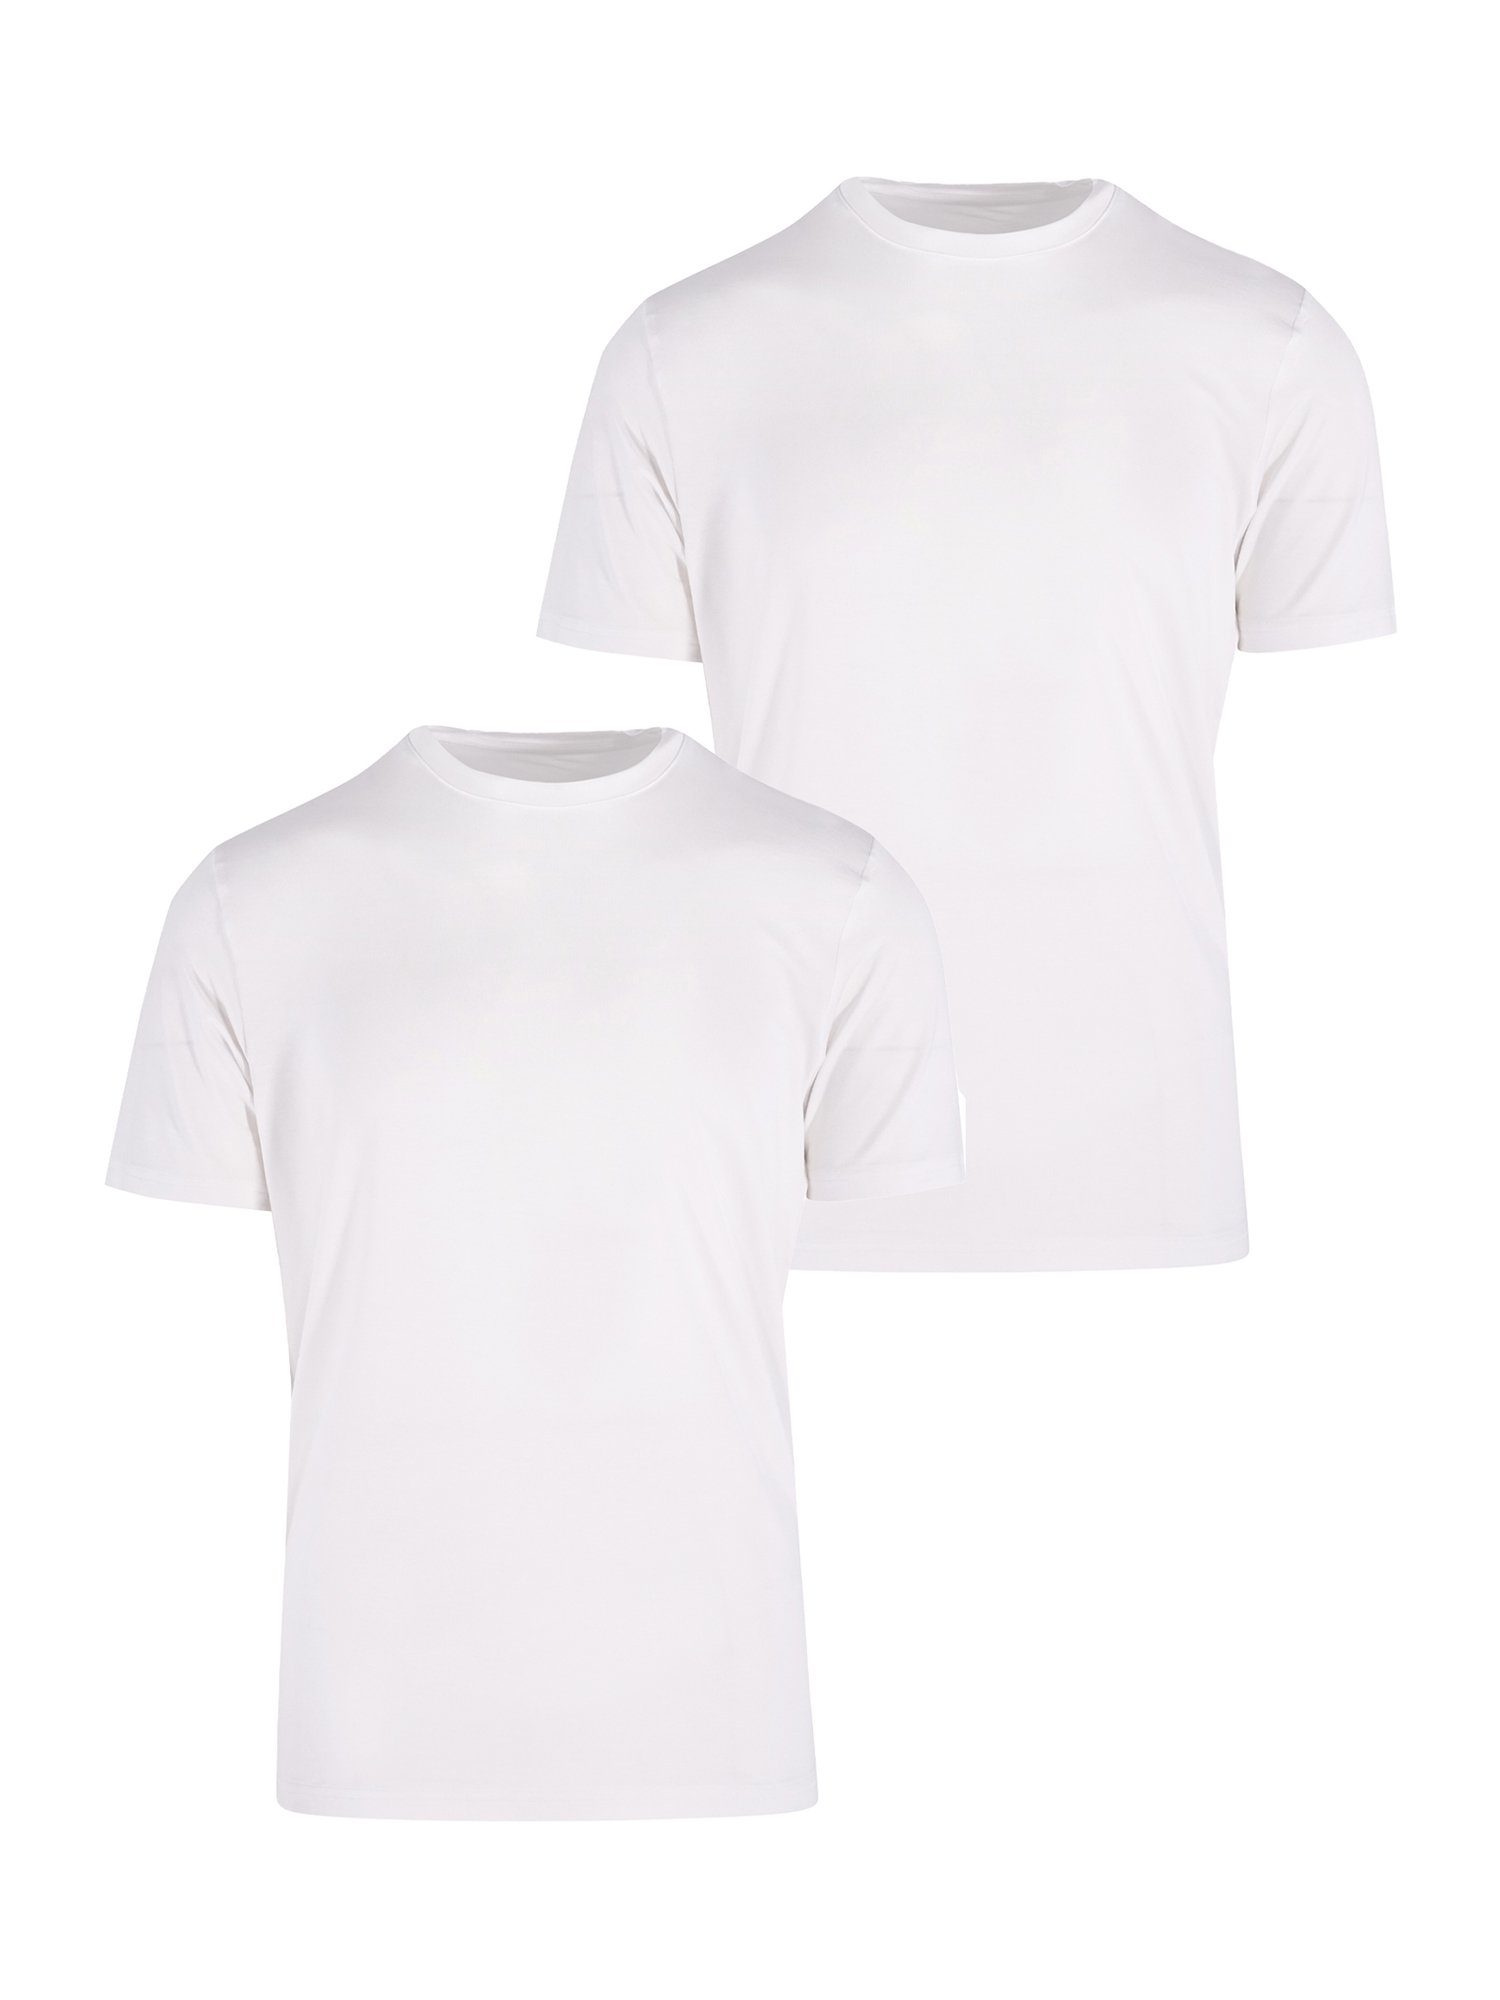 BlackSpade T-Shirt Silver (2-tlg) weiß